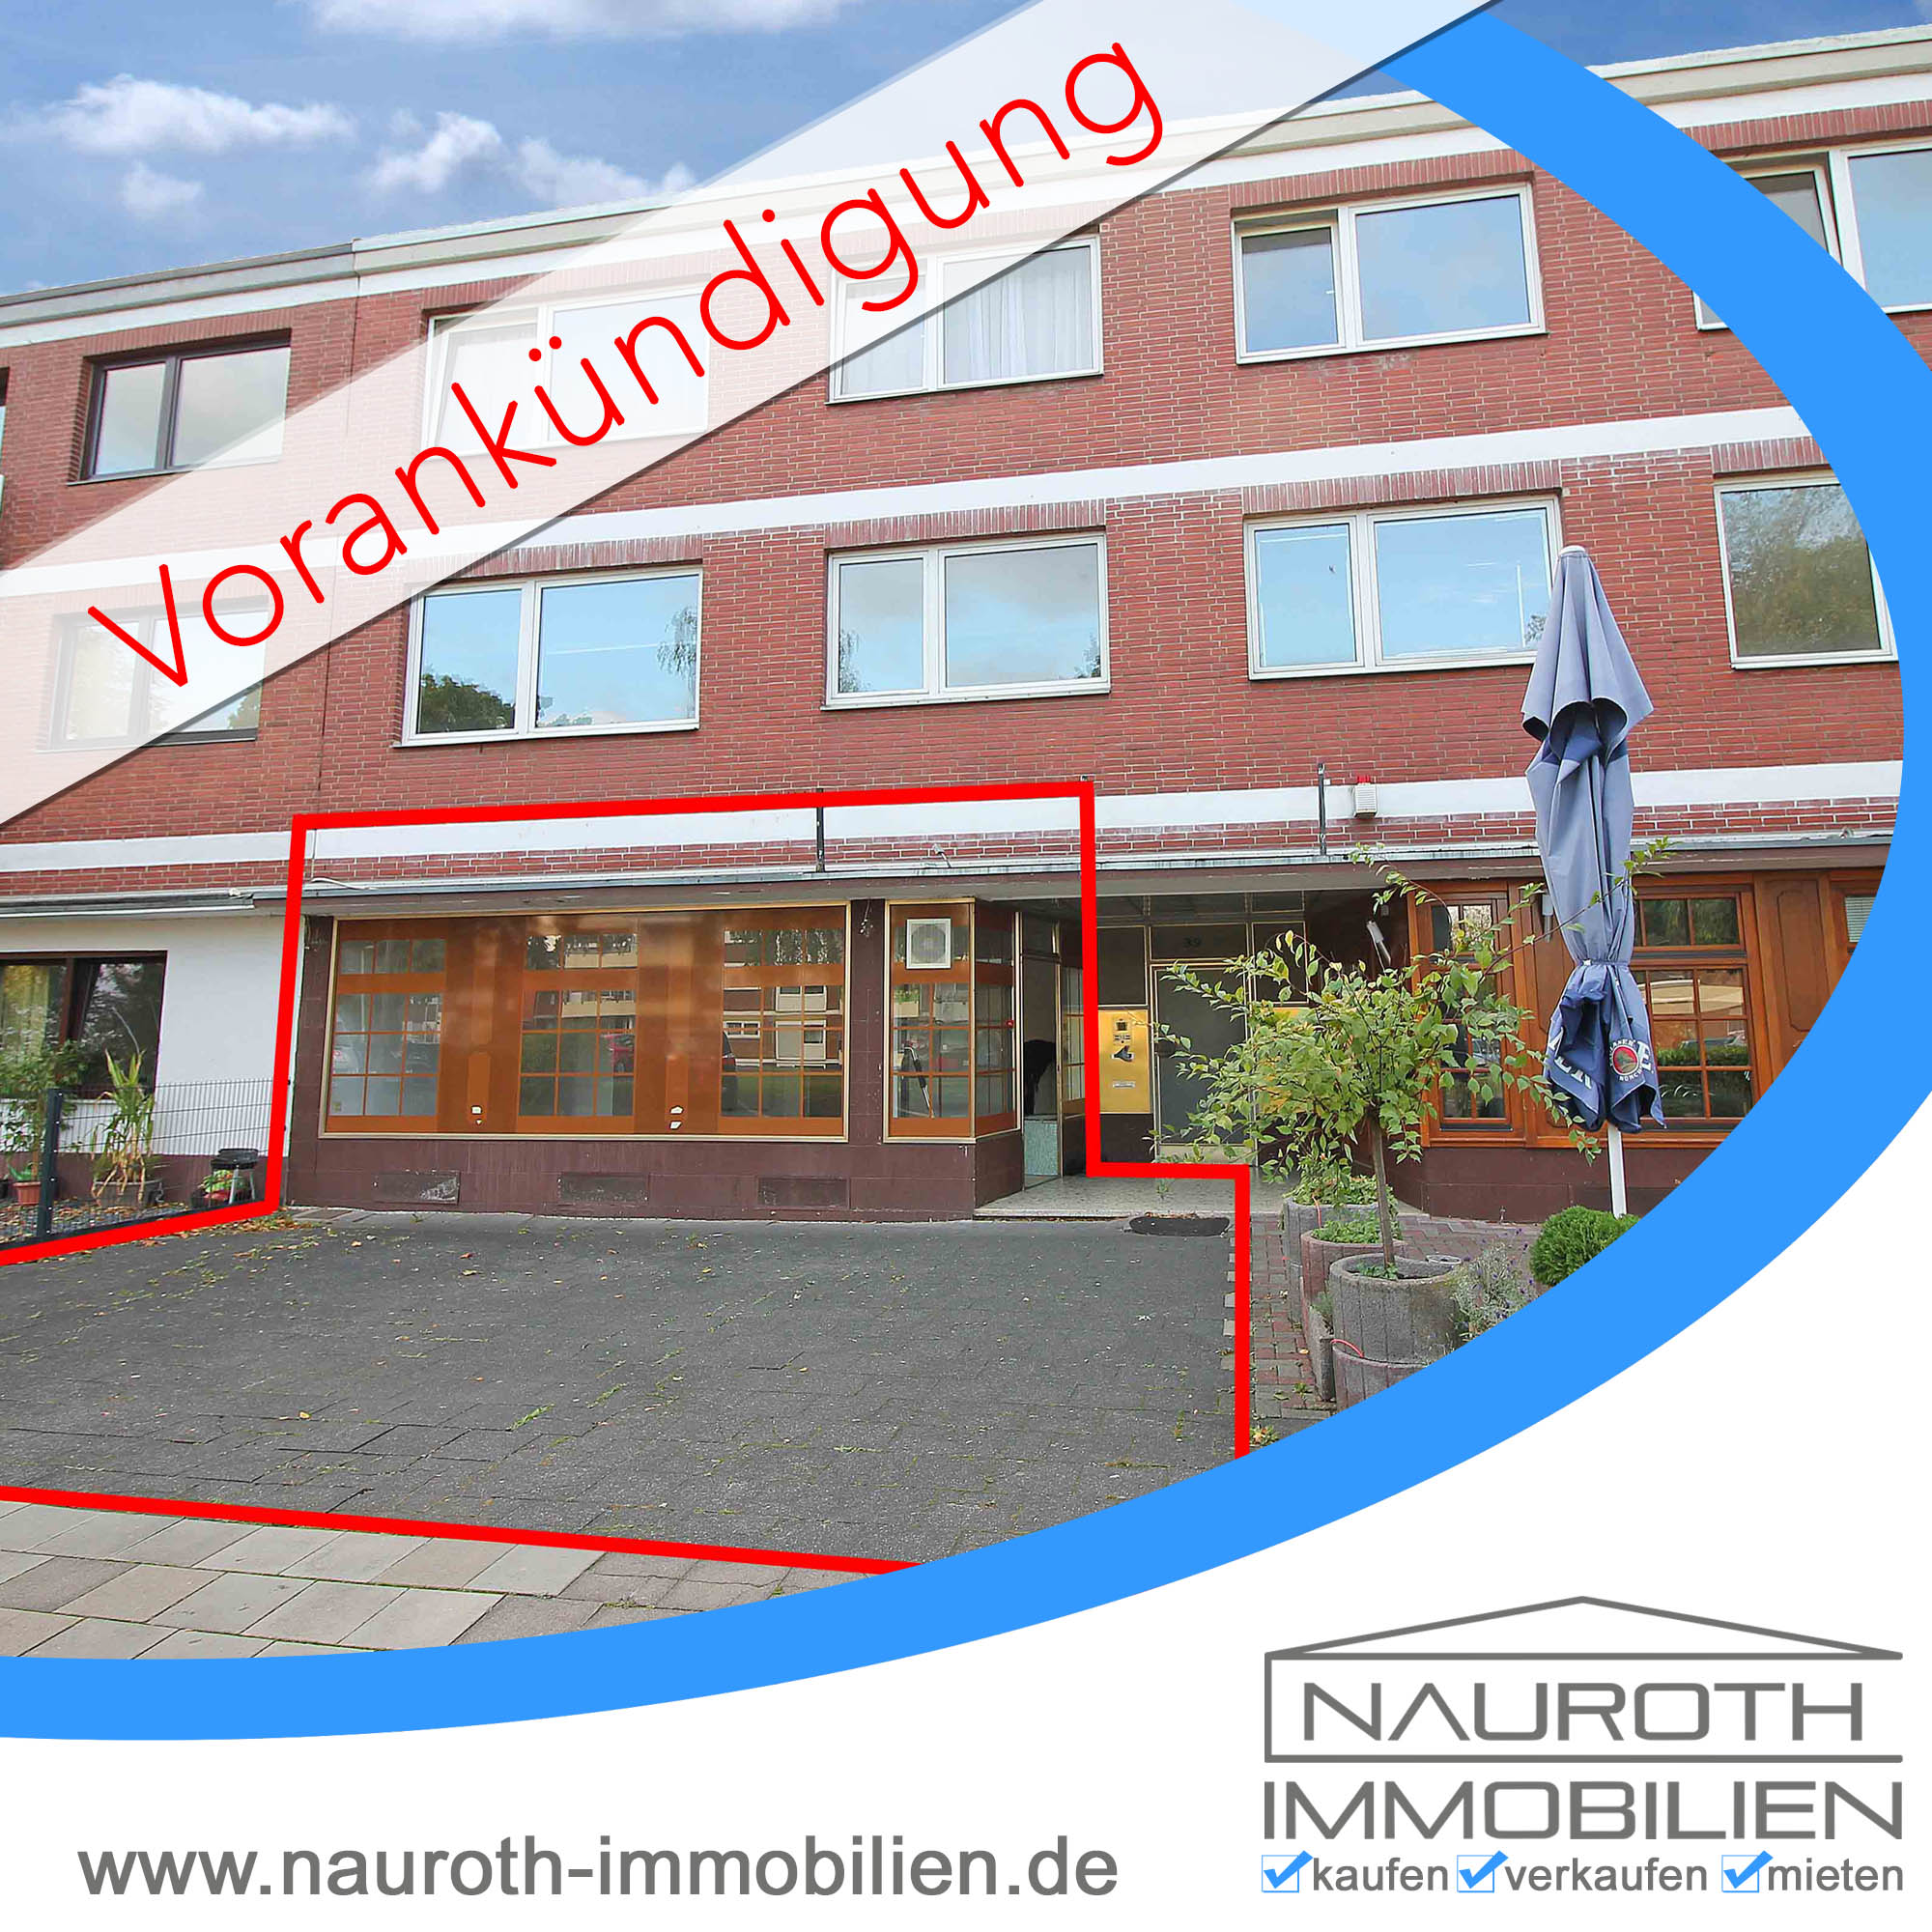 Nauroth Immobilien | Ihr Immobilienmakler